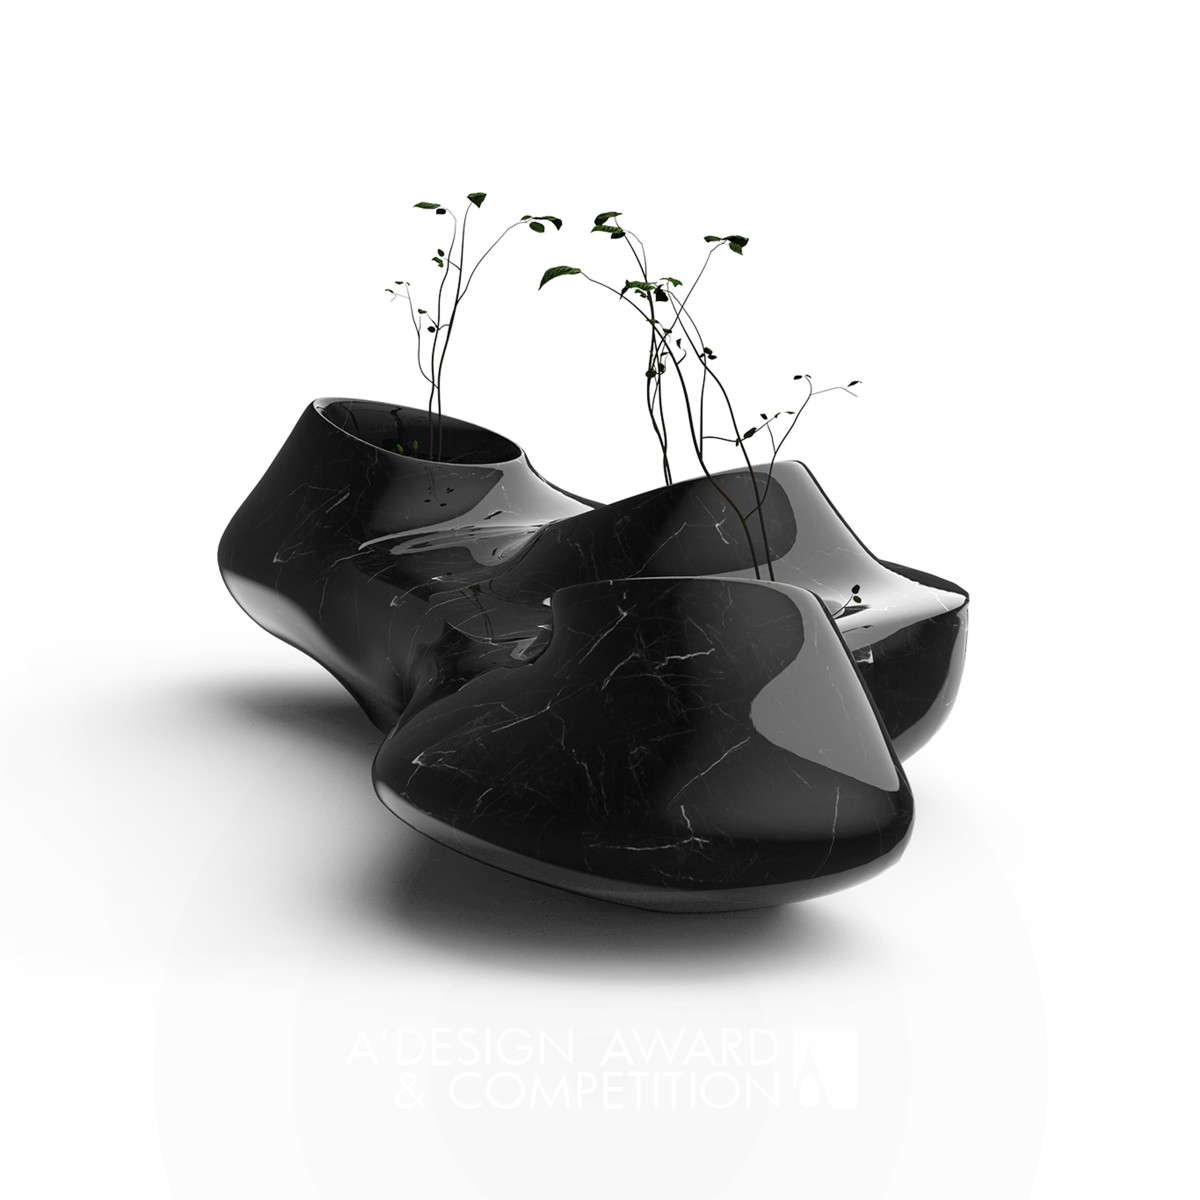 Kariz Flower Pot by Seyyed Mohammad Hosseini Ghaffari